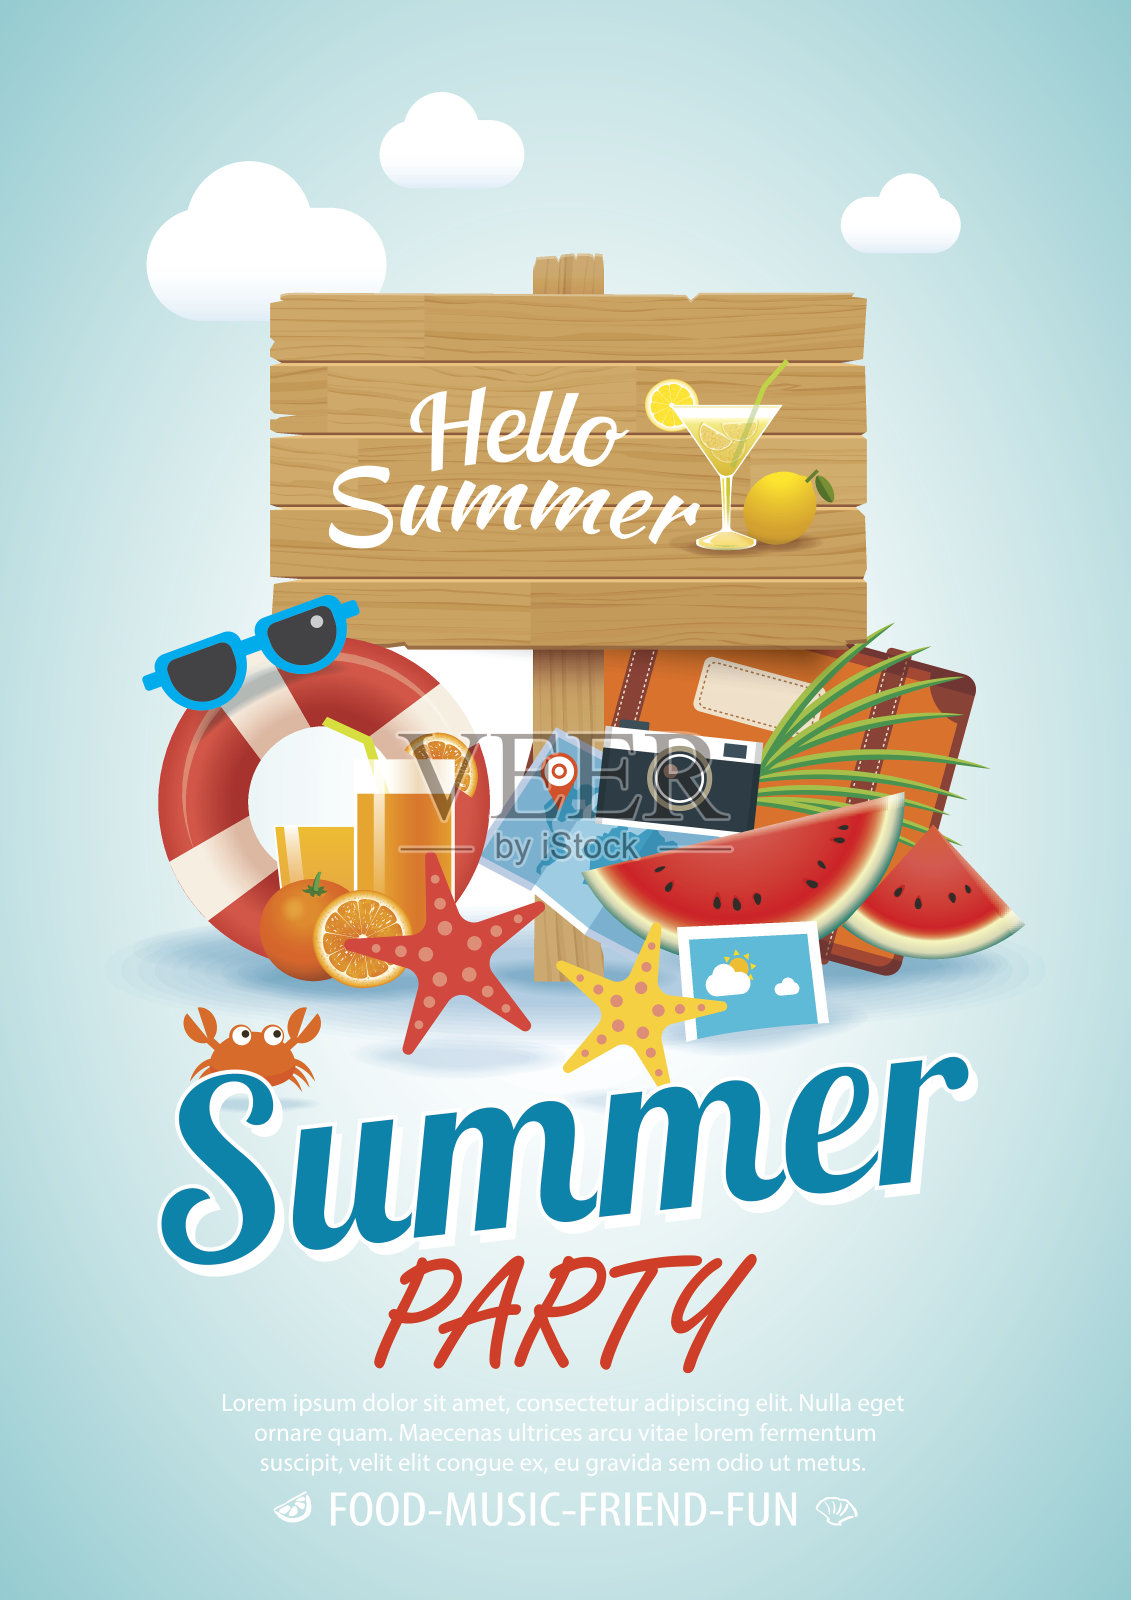 夏季海滩派对邀请海报背景元素和A4大小的木制标志。设计模板素材